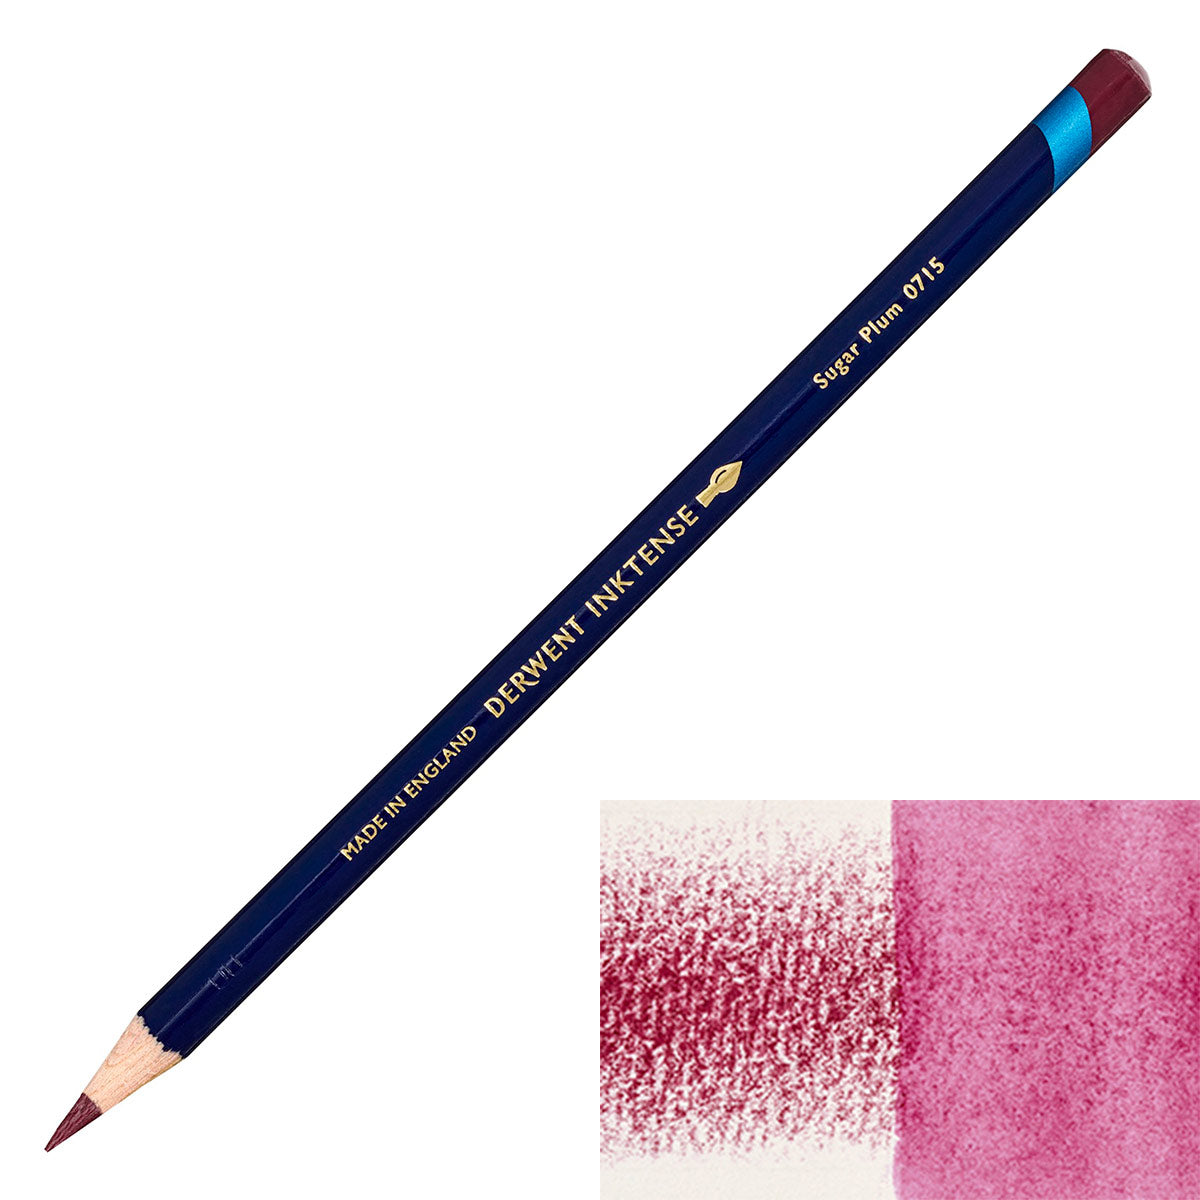 Derwent - Inktense Pencil - Sugar Plum 0715